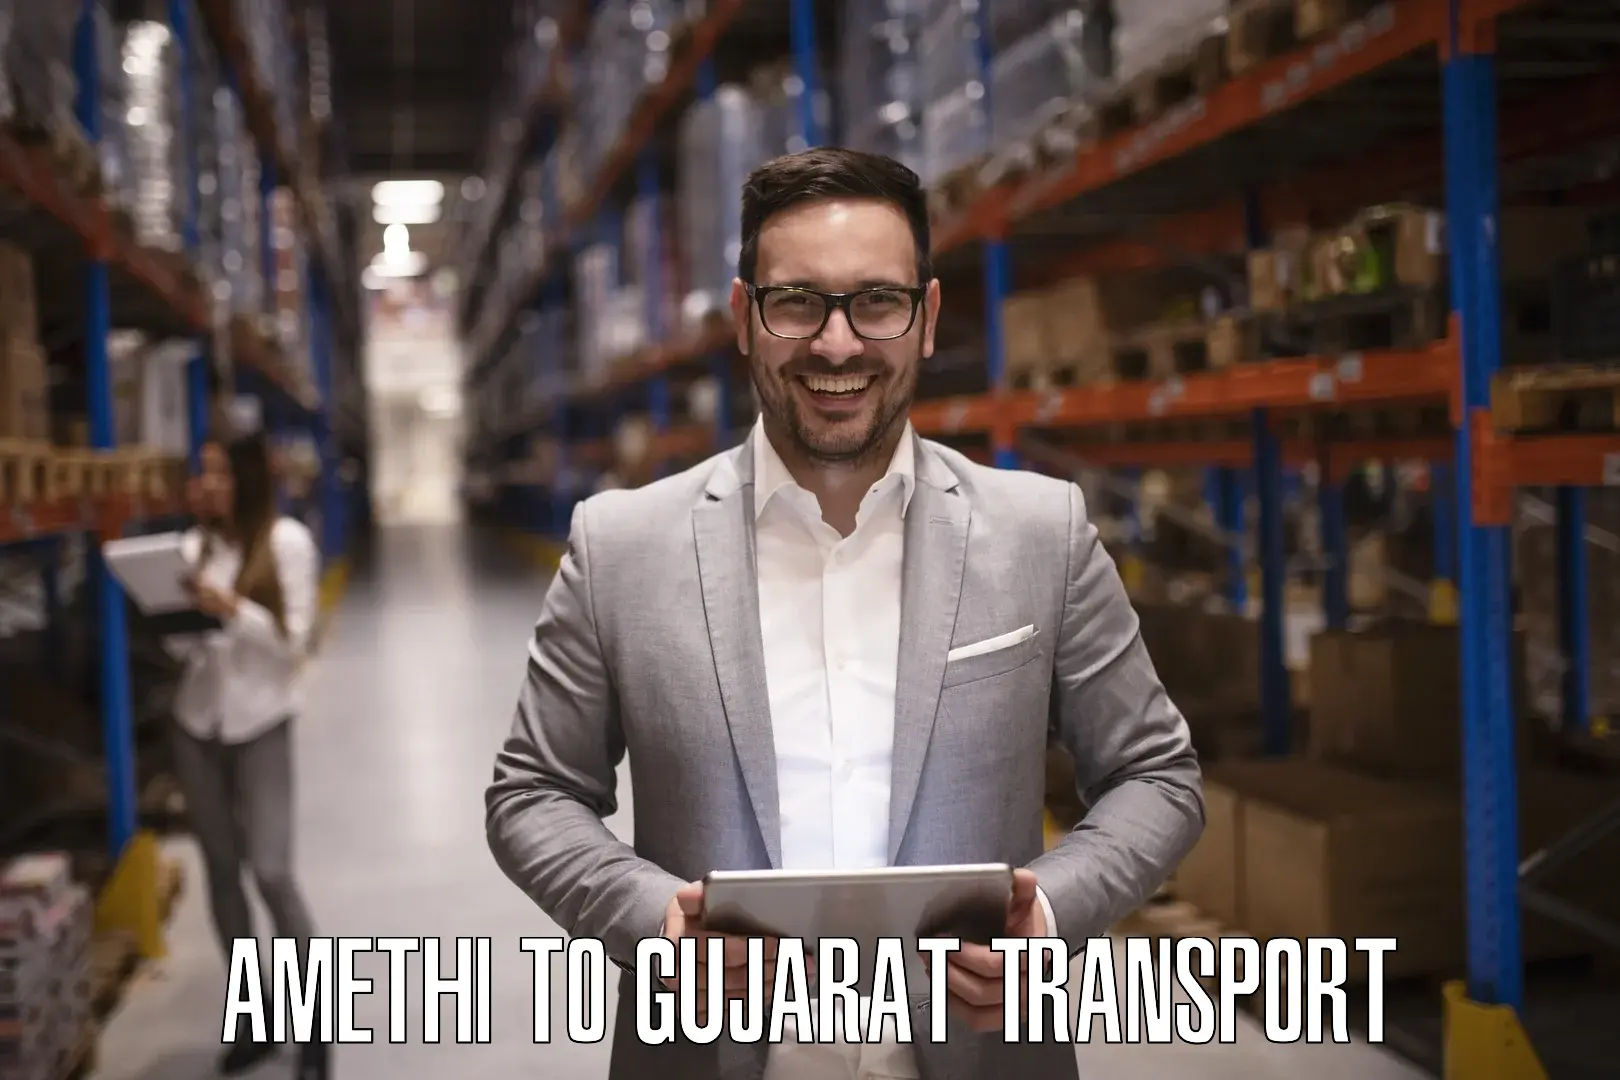 Furniture transport service Amethi to Gujarat